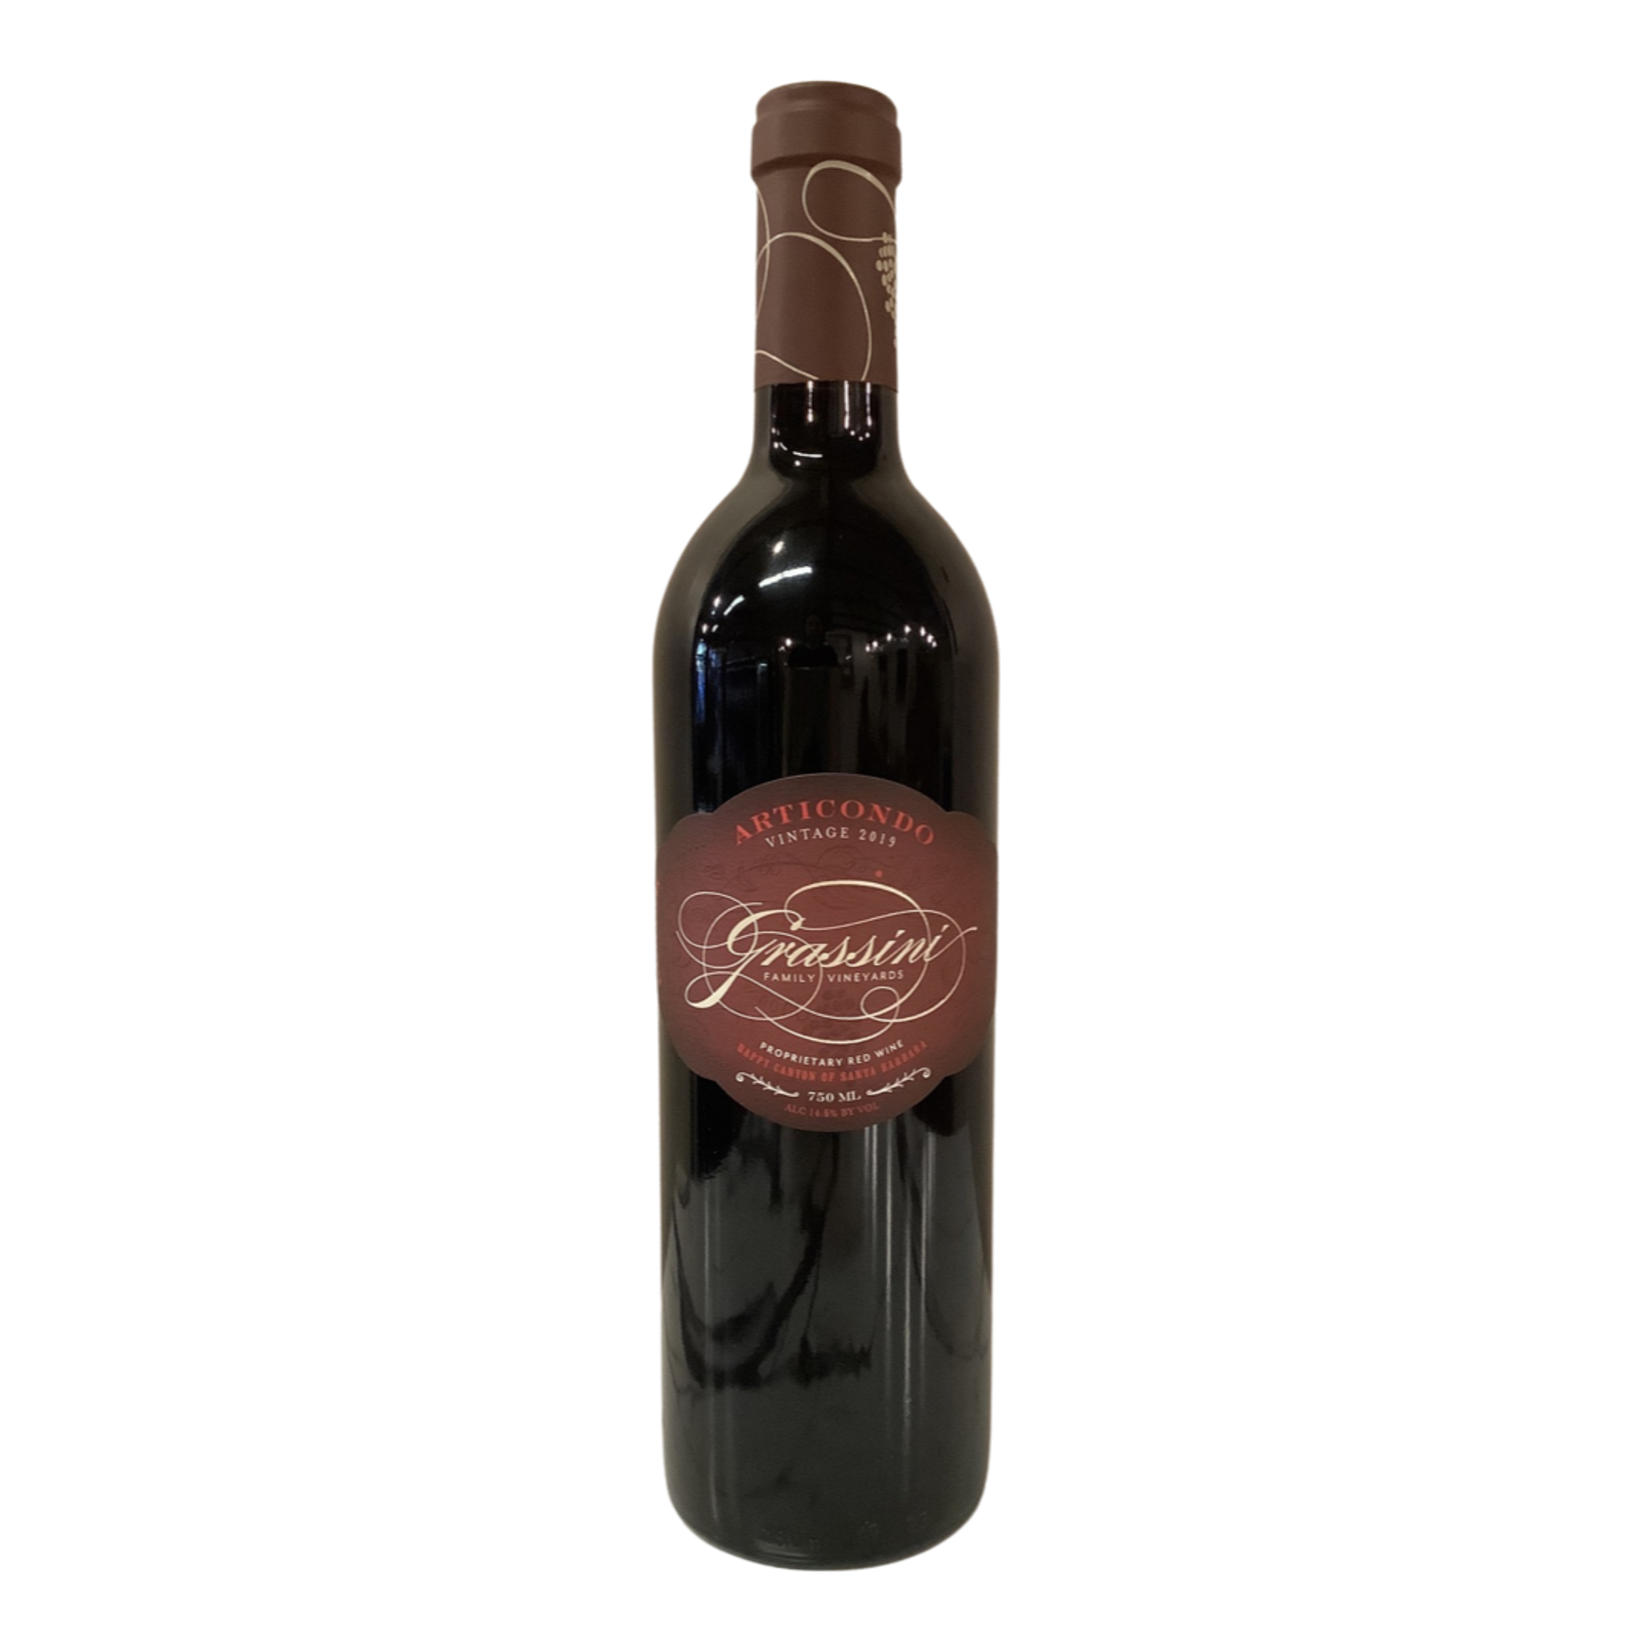 2019 Grassini "Articondo" Bordeaux Blend, Happy Canyon CA